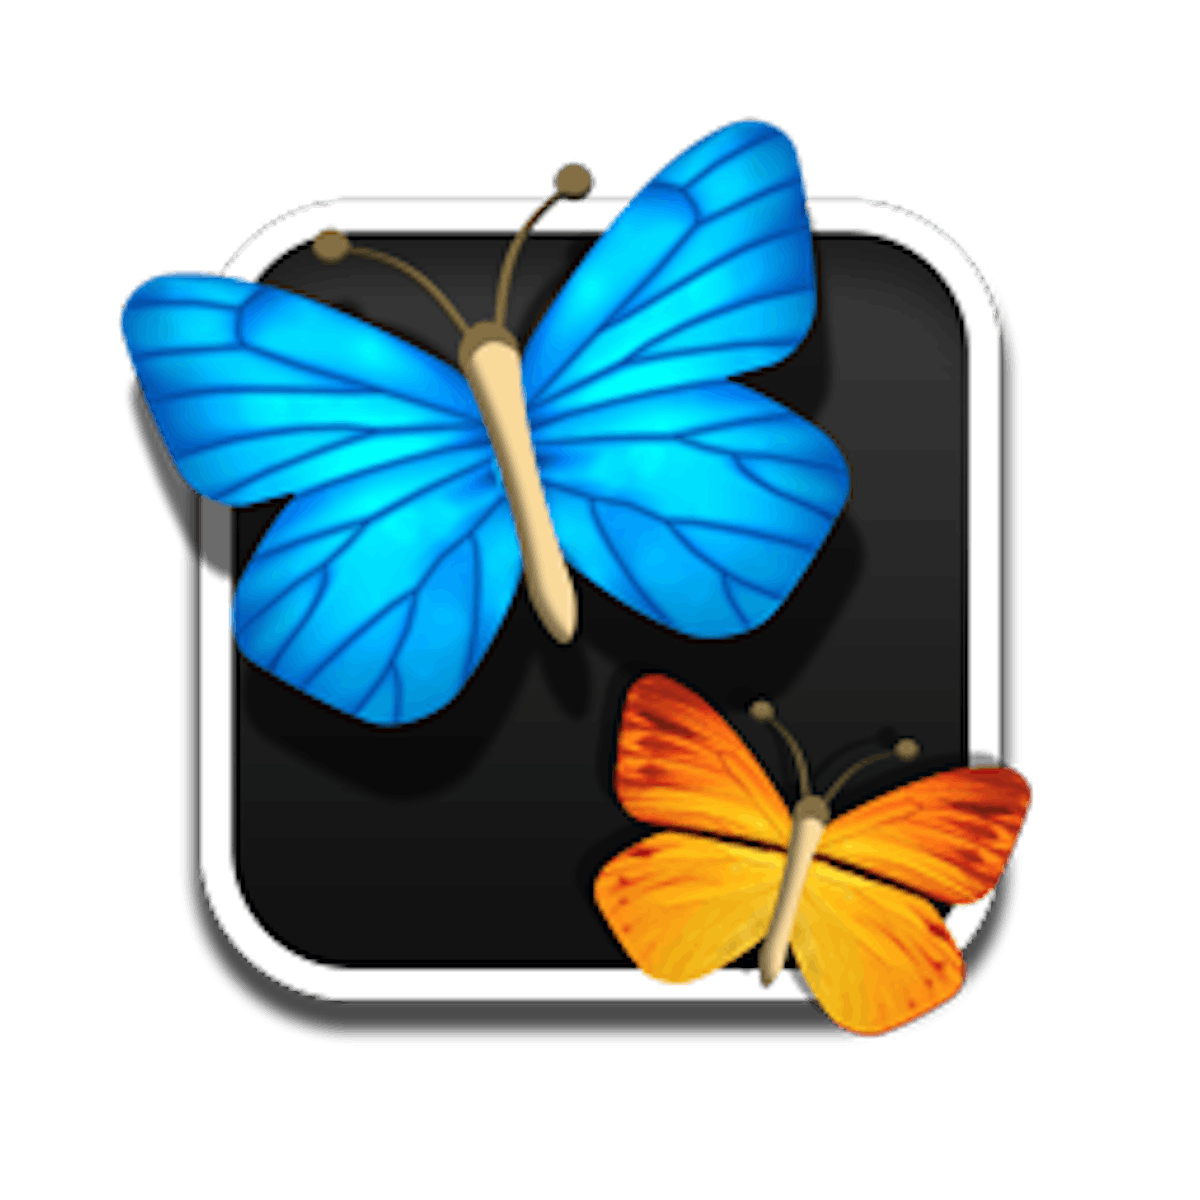 Misbruik Evenement Opblazen Vlinders | Tovertafel spel | Tover